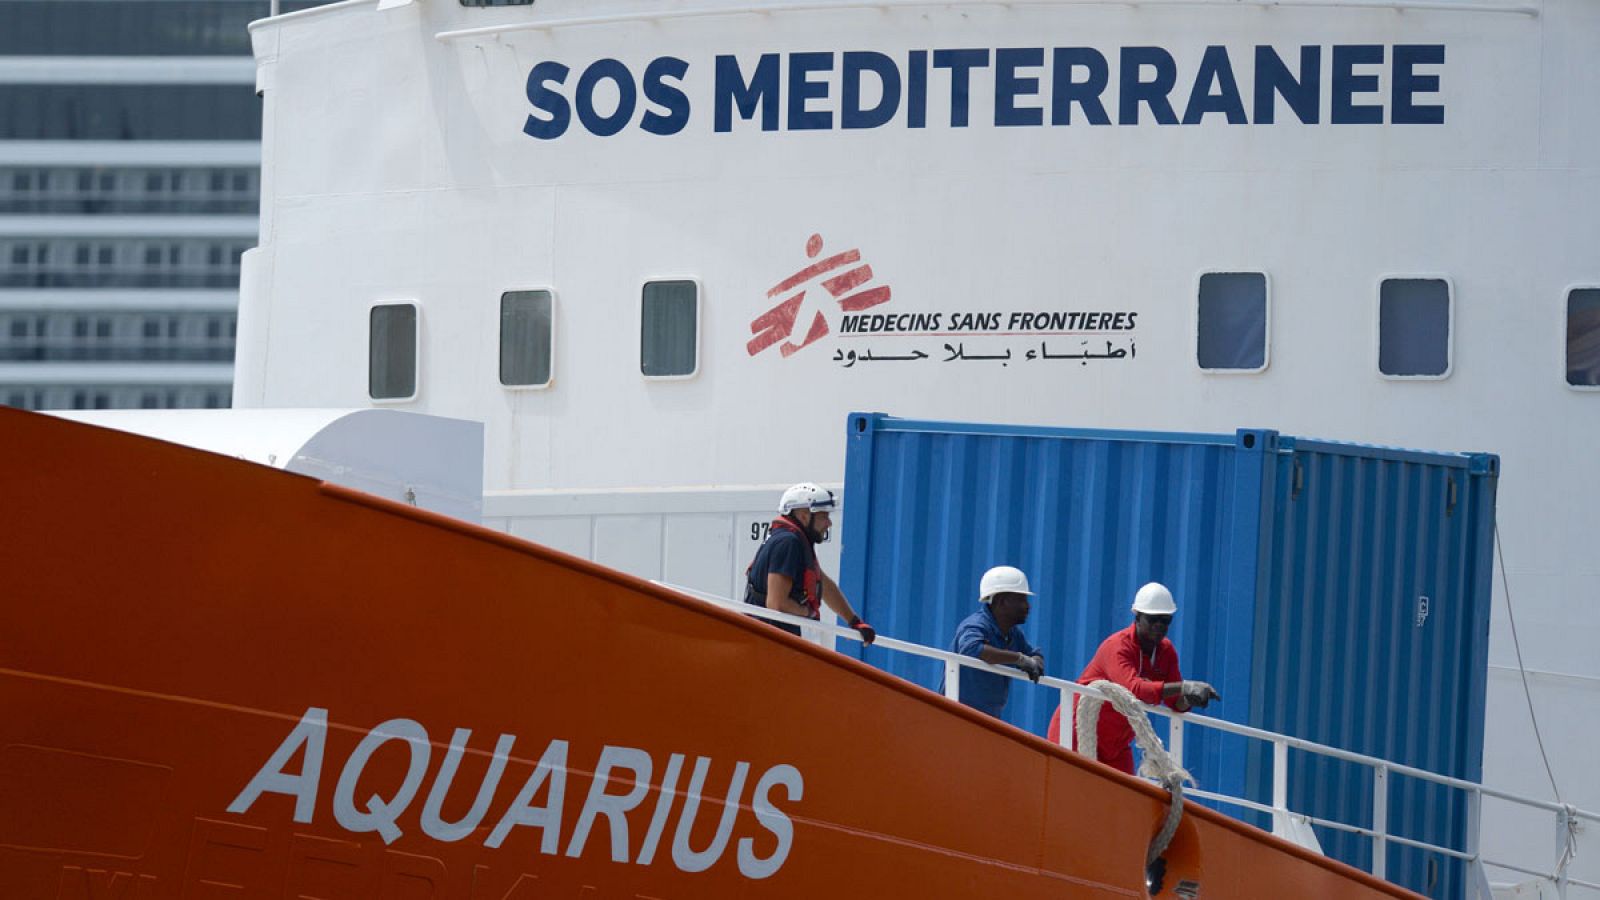 Miembros de la tripulación a bordo del barco de rescate Aquarius en una imagen de archivo tomada el 15 de agosto de 2018 en Malta.